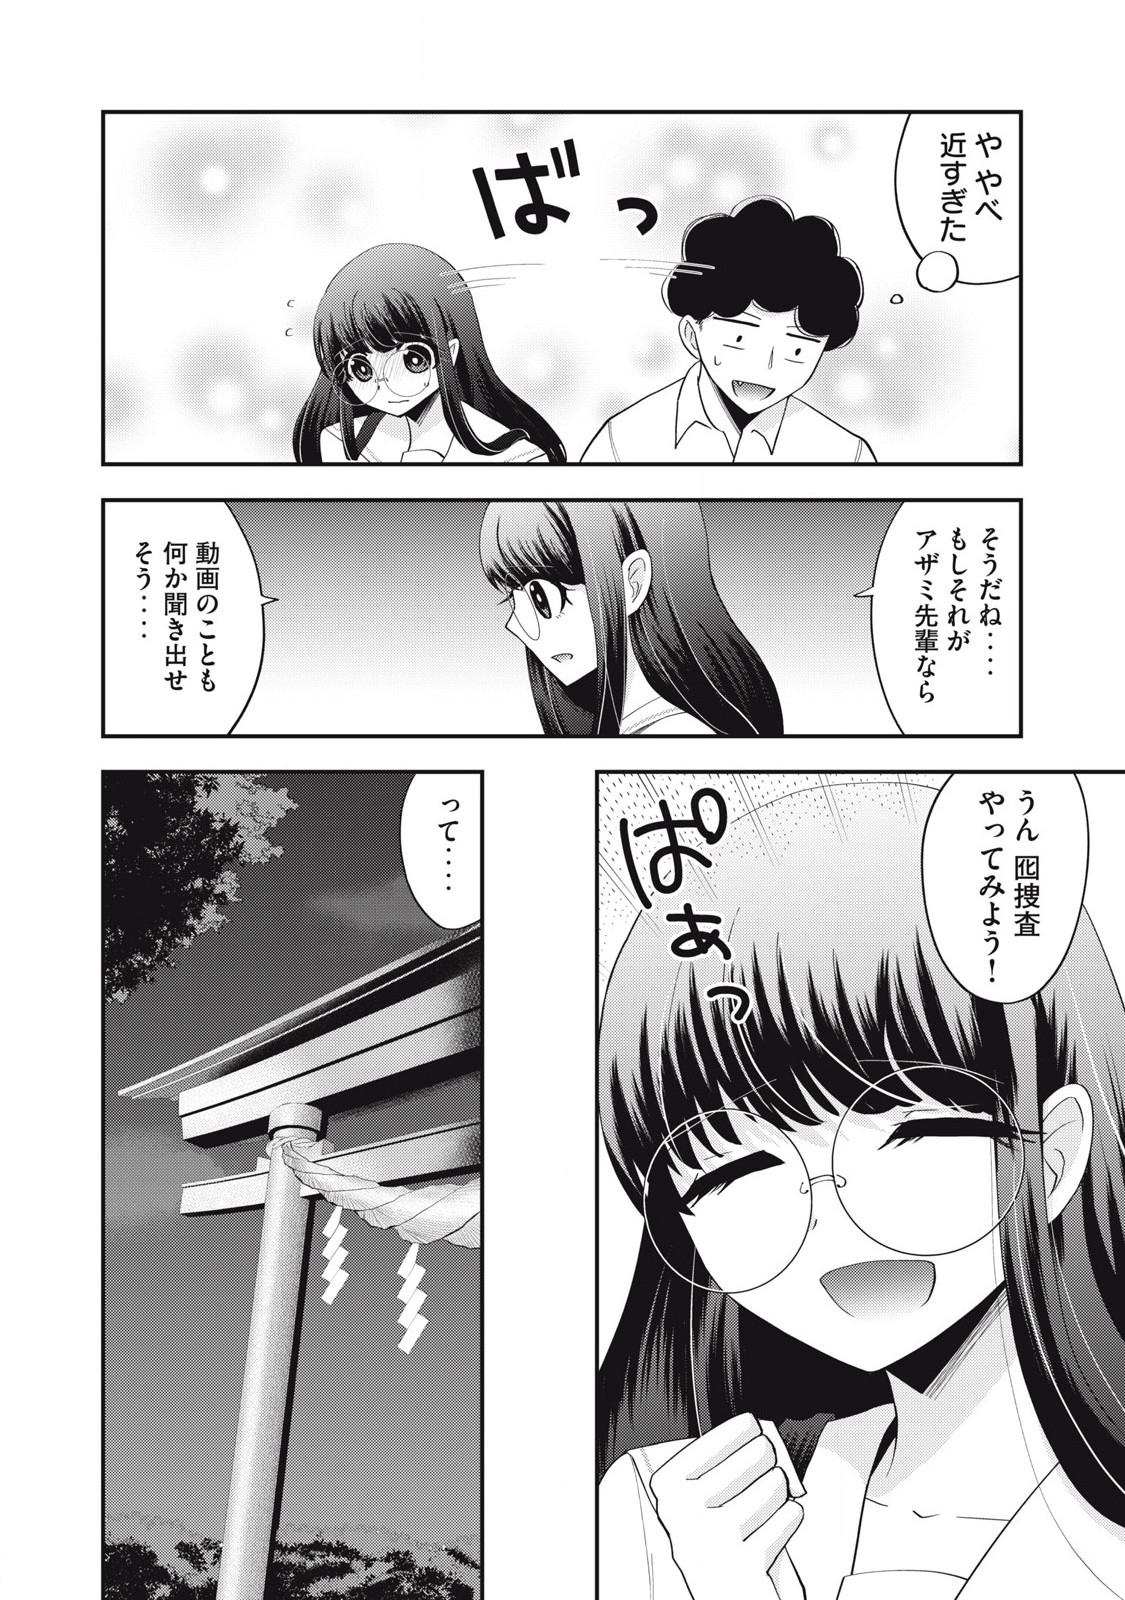 Yumeutsutsu no Hana no Sono - Chapter 22 - Page 2